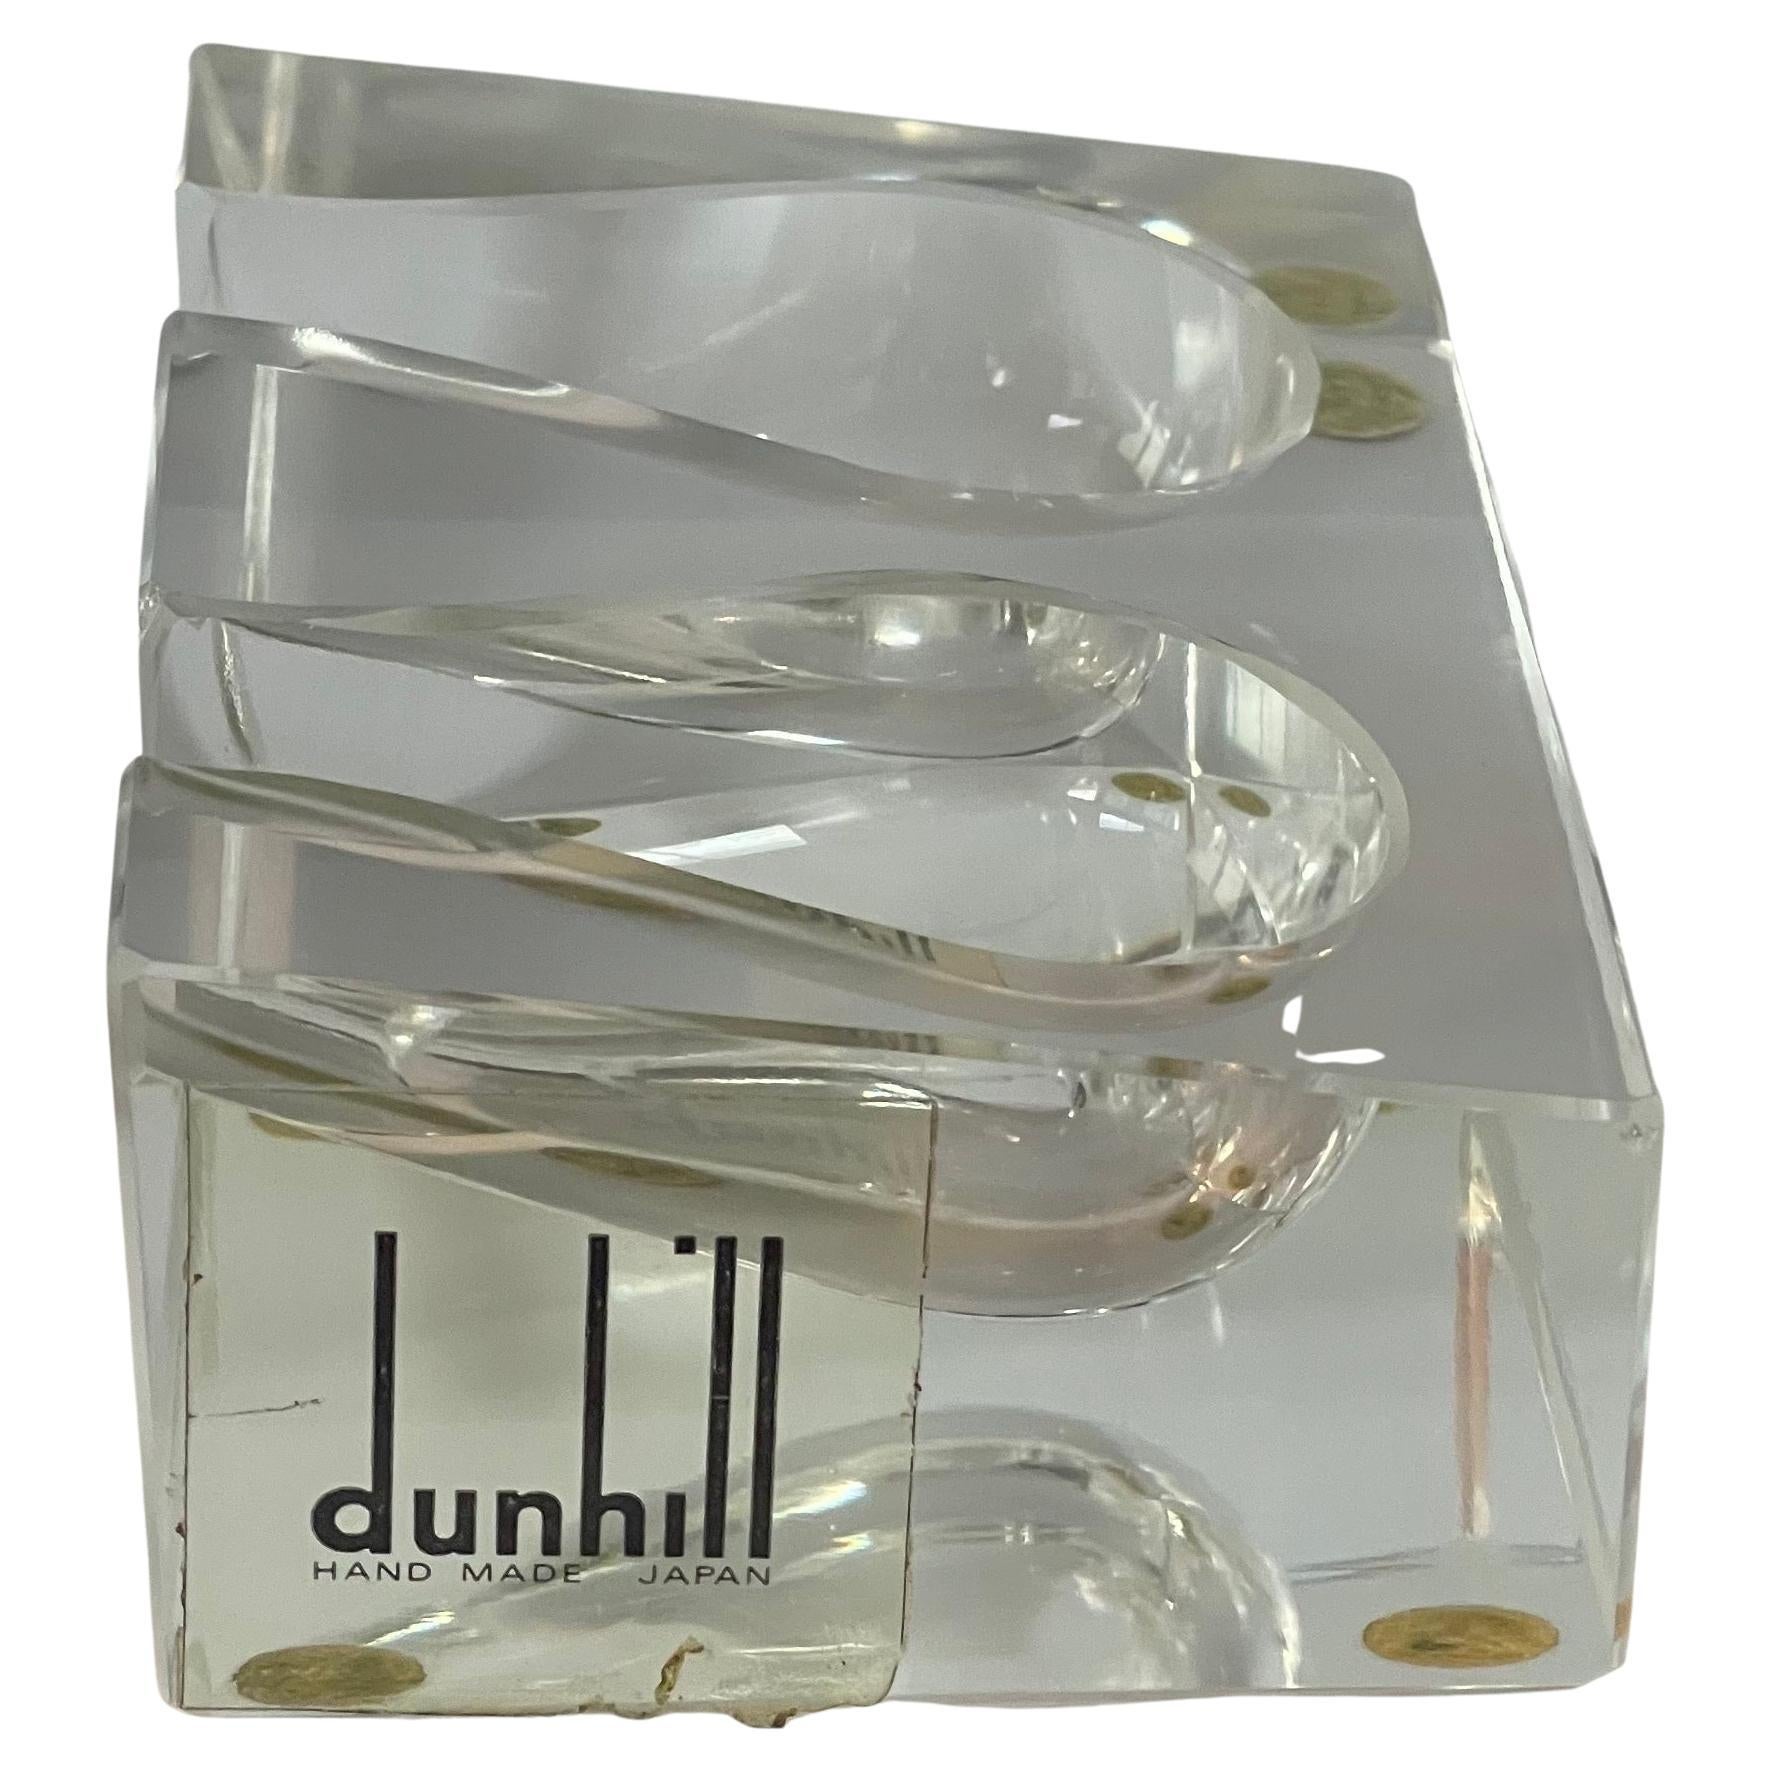 Un très beau et rare porte-pipe double en verre art déco / support / repose par Dunhill, vers les années 1940.  Le reste est en très bon état, sans éclats ni fissures, et mesure 4,25